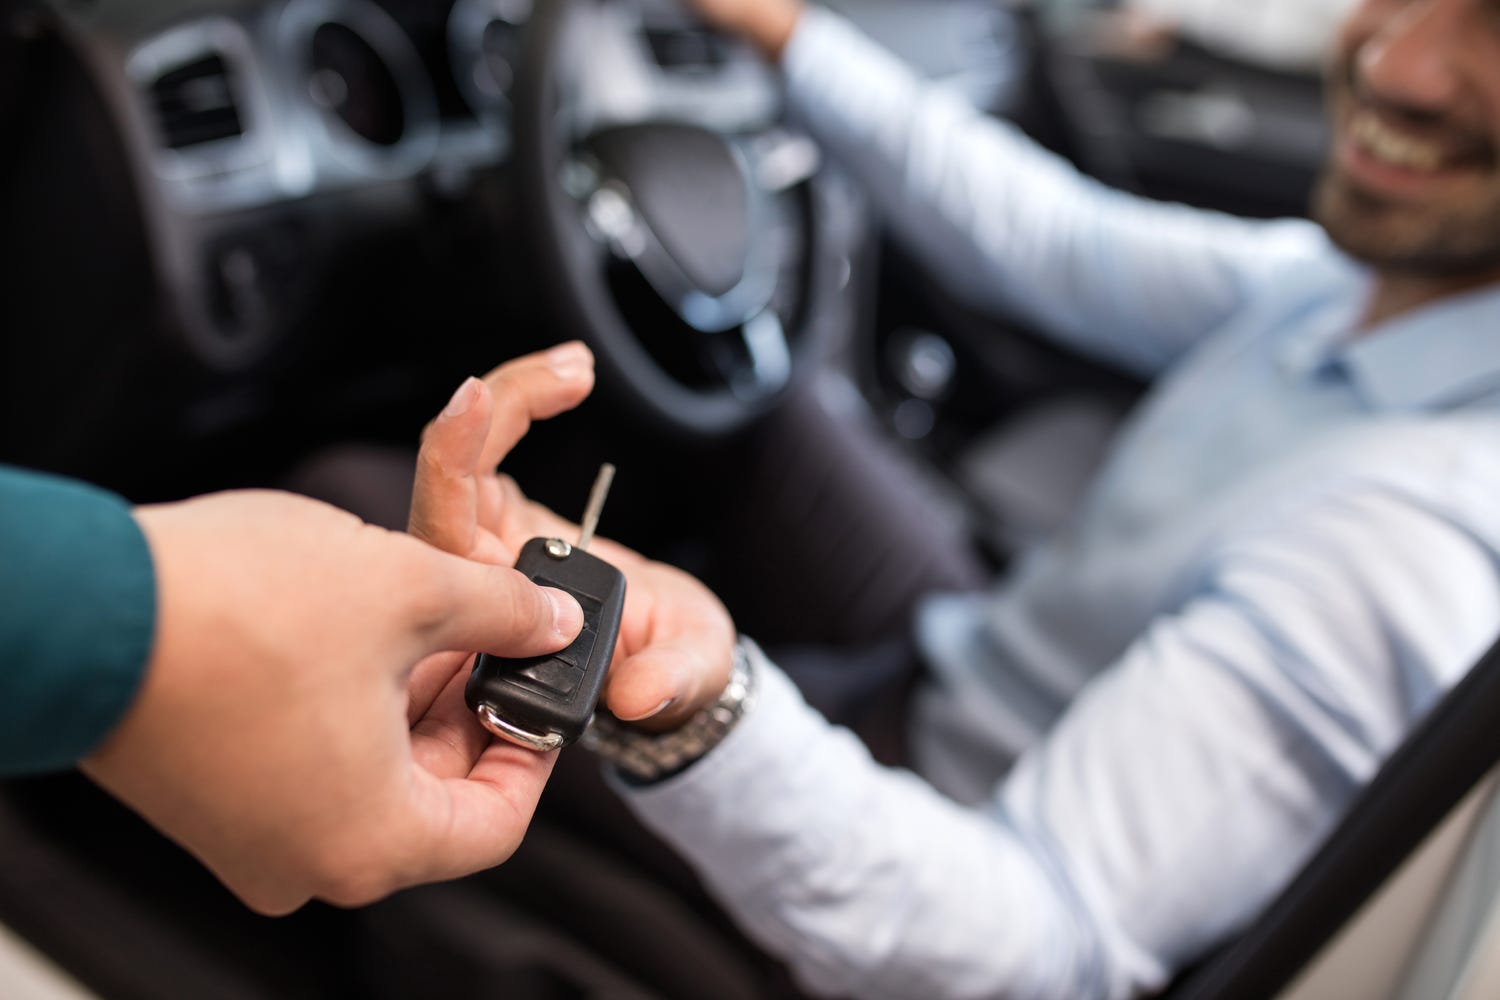 Car rental representative handing keys to a man in rental car